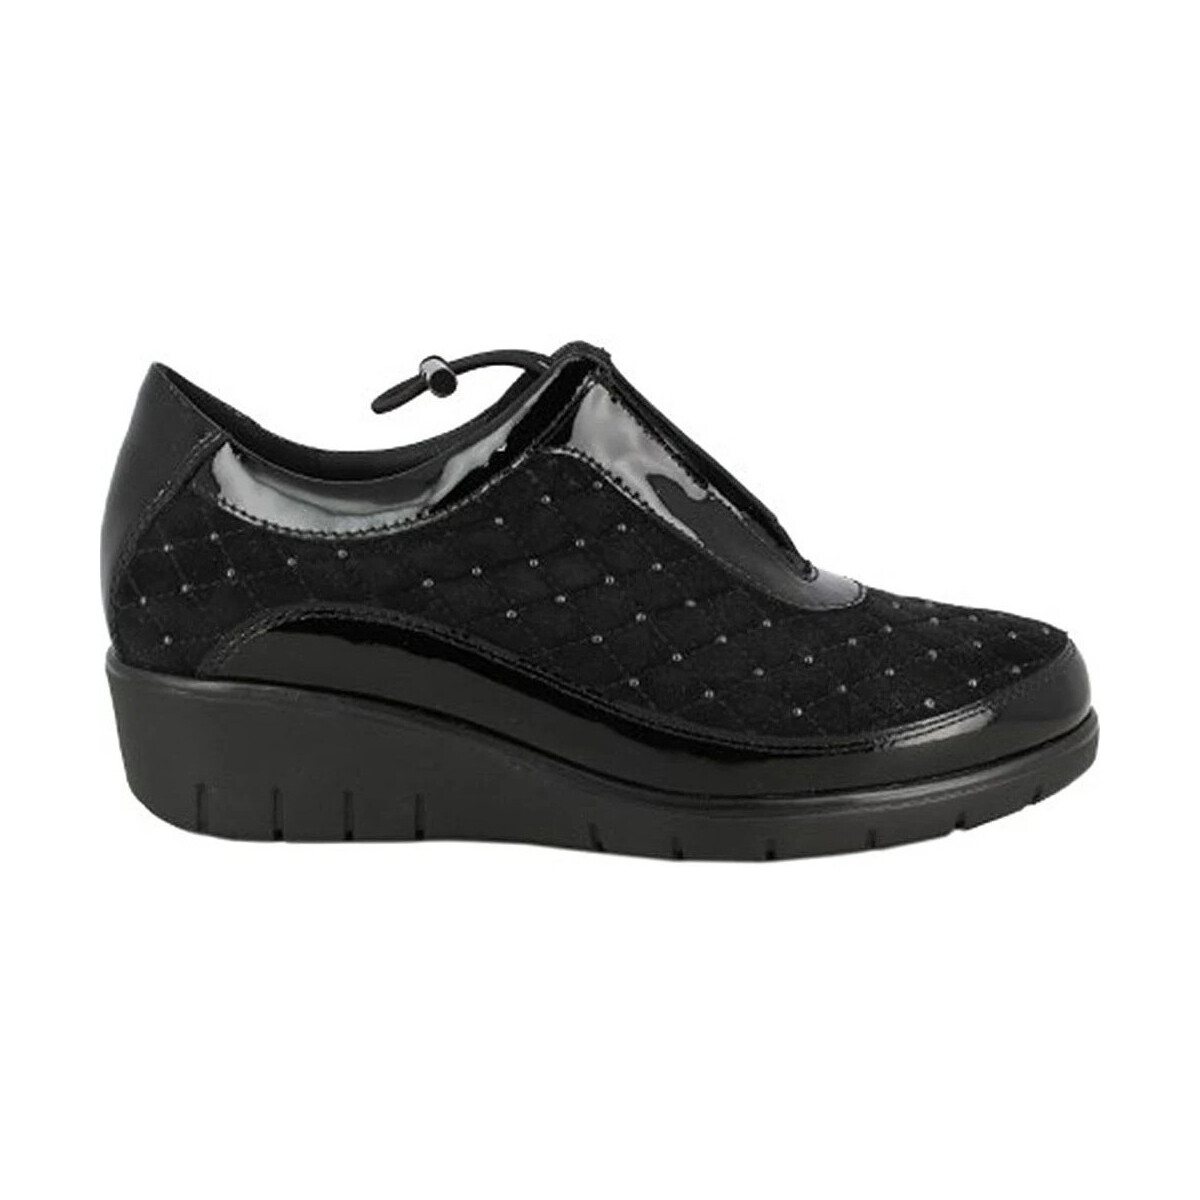 Zapatos Mujer Zapatillas bajas Doctor Cutillas DEPORTIVA  SIDNEY 60327 Negro